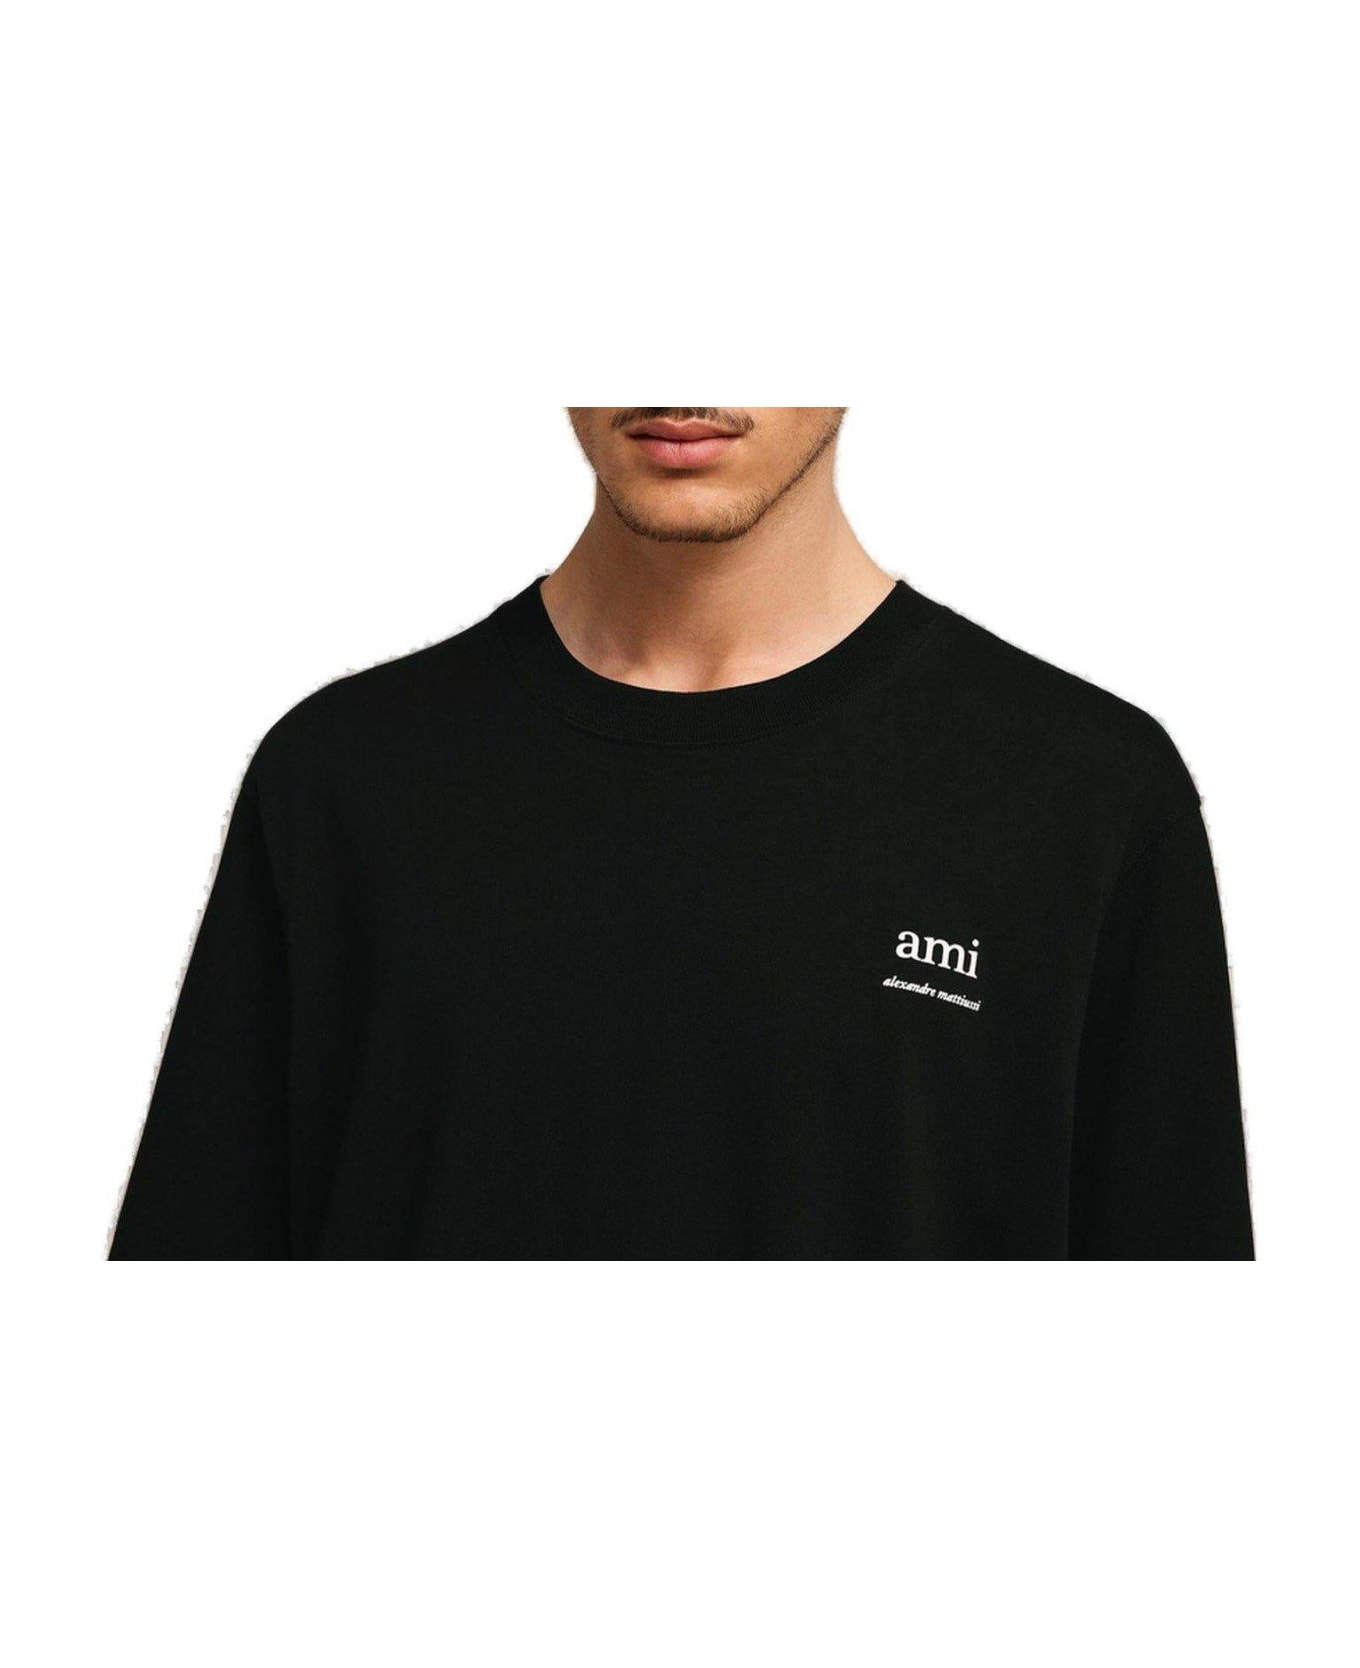 Ami Alexandre Mattiussi Logo Printed Crewneck T-shirt - Black